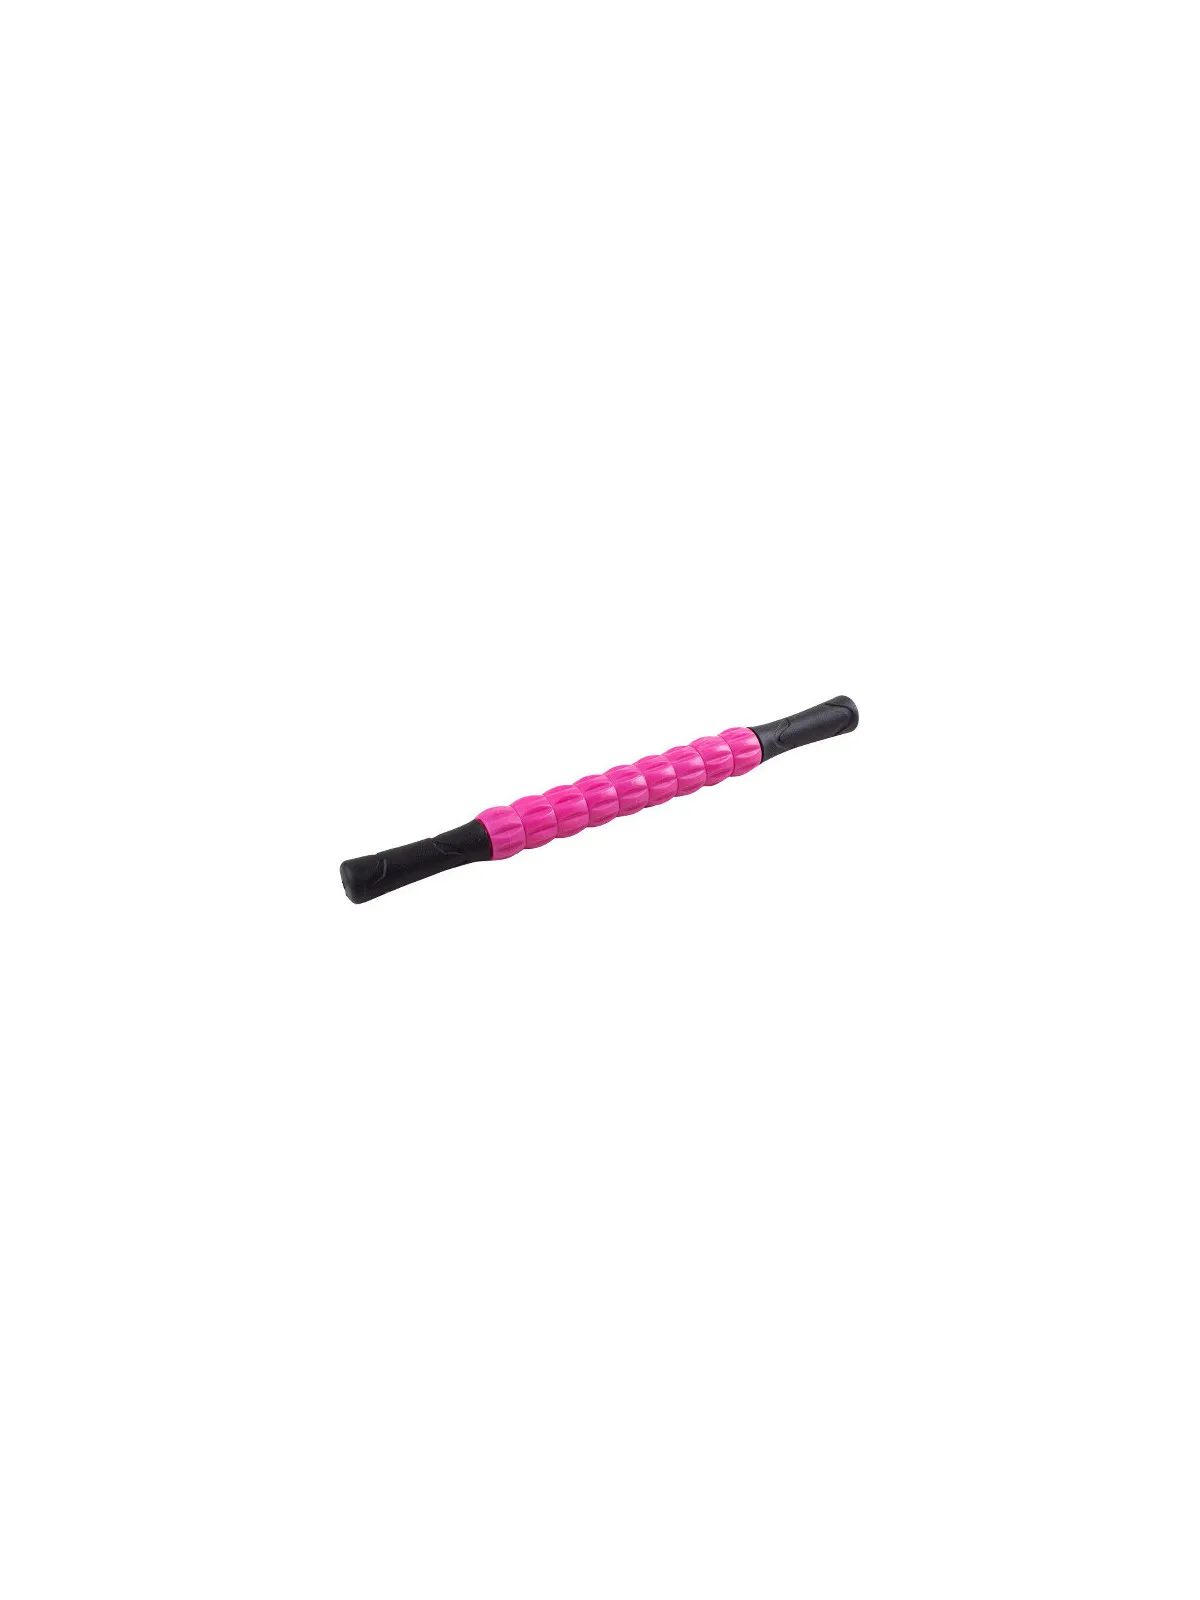 Roller do masażu różowy - MASSAGE ROLLER M1 43 cm 02 Pink